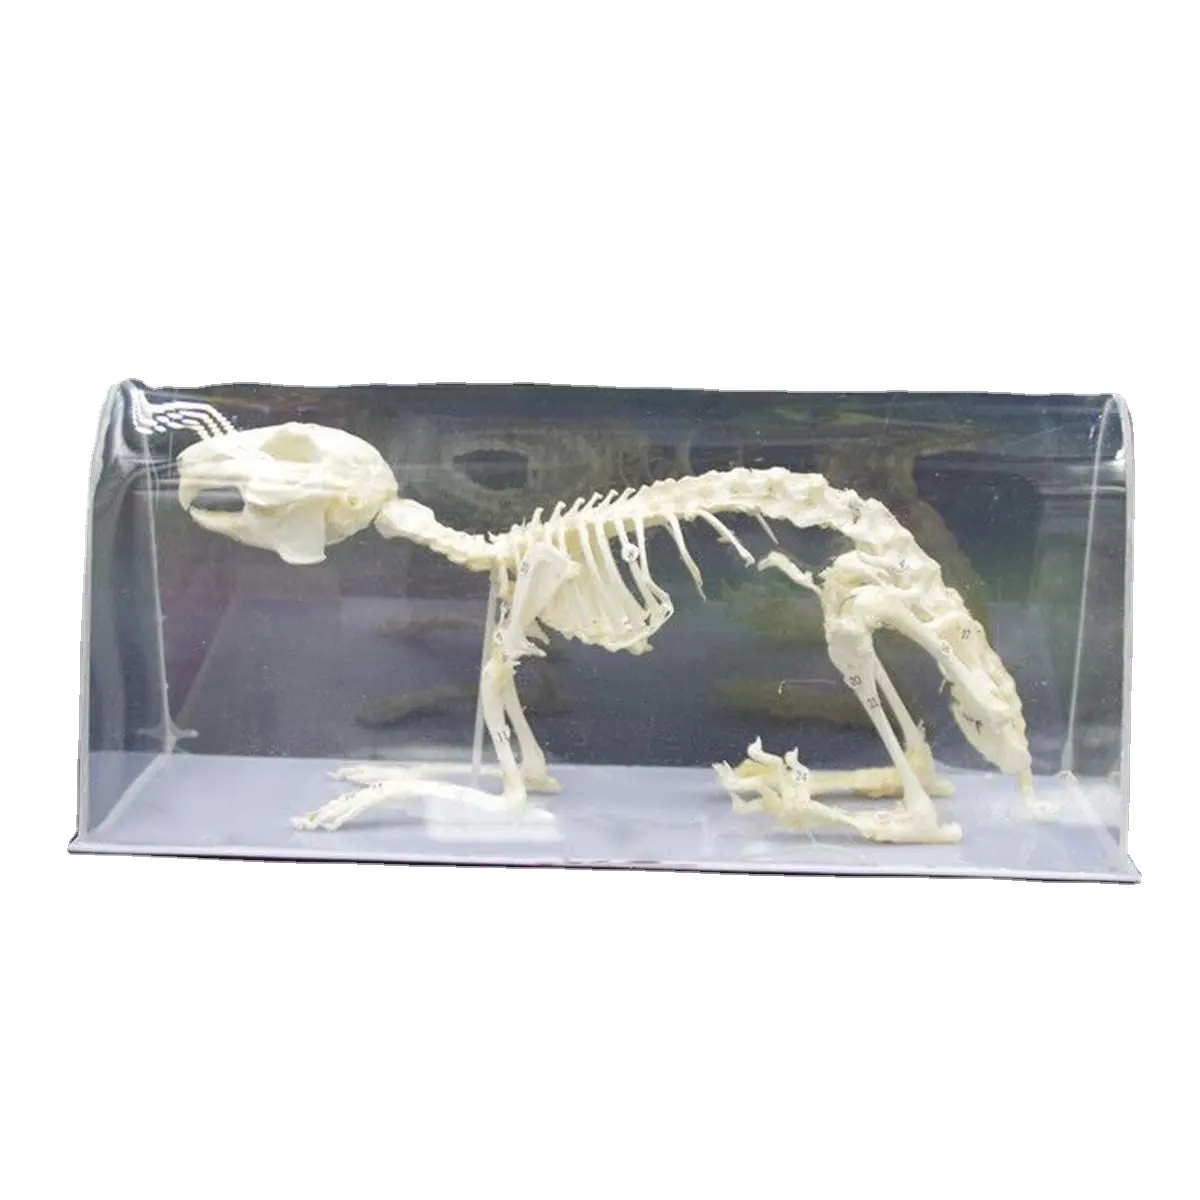 أرنب قالب هيكل عظمي-أرنب هيكل عظمي عينة العظام الطبيعية نموذج الحيوان الهيكل العظمي مختبر الدرجة عينة وسائل تعليمية التعلم